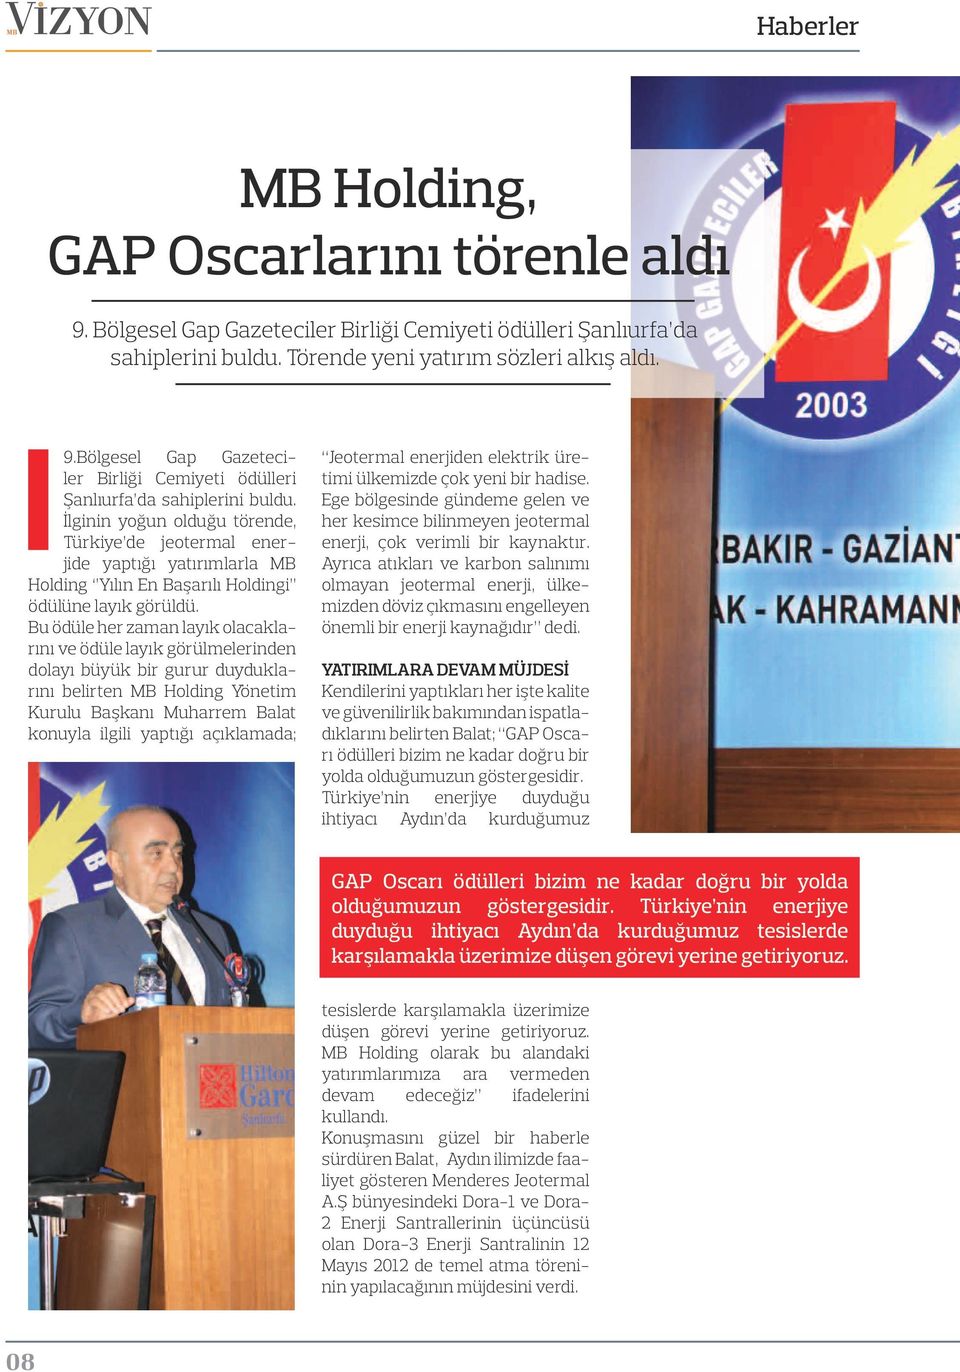 İlginin yoğun olduğu törende, Türkiye de jeotermal enerjide yaptığı yatırımlarla MB Holding Yılın En Başarılı Holdingi ödülüne layık görüldü.